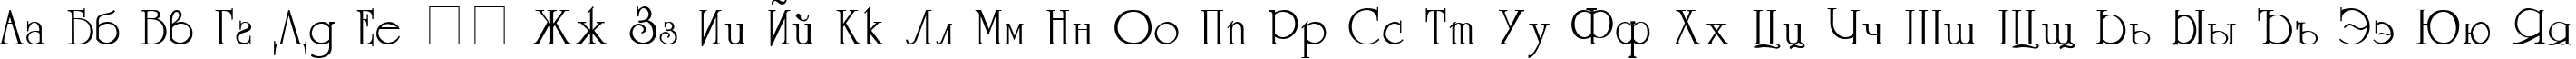 Пример написания русского алфавита шрифтом UniversityC